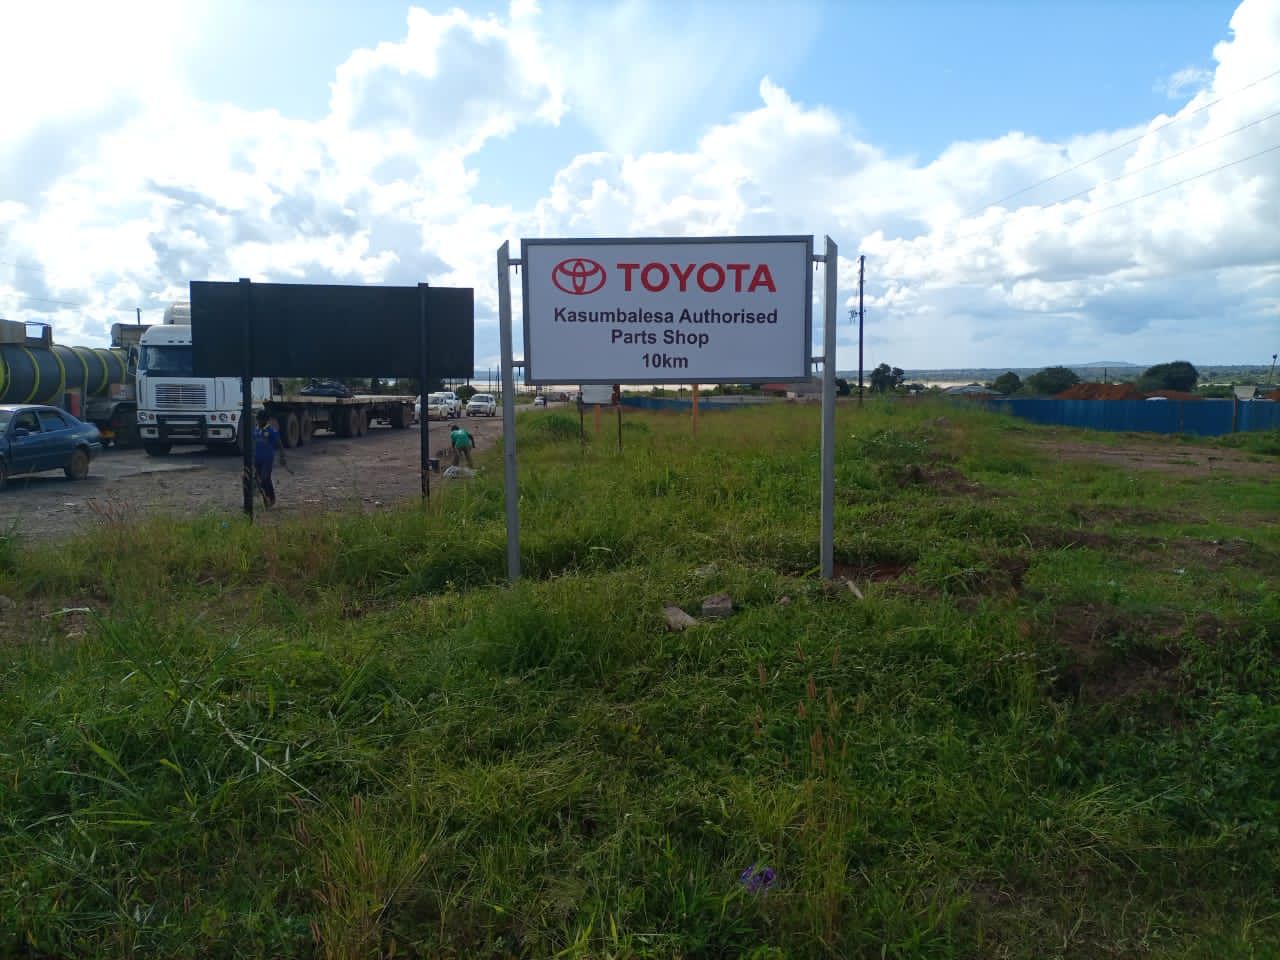 Kasumbalesa Toyota Authorized Parts Shop